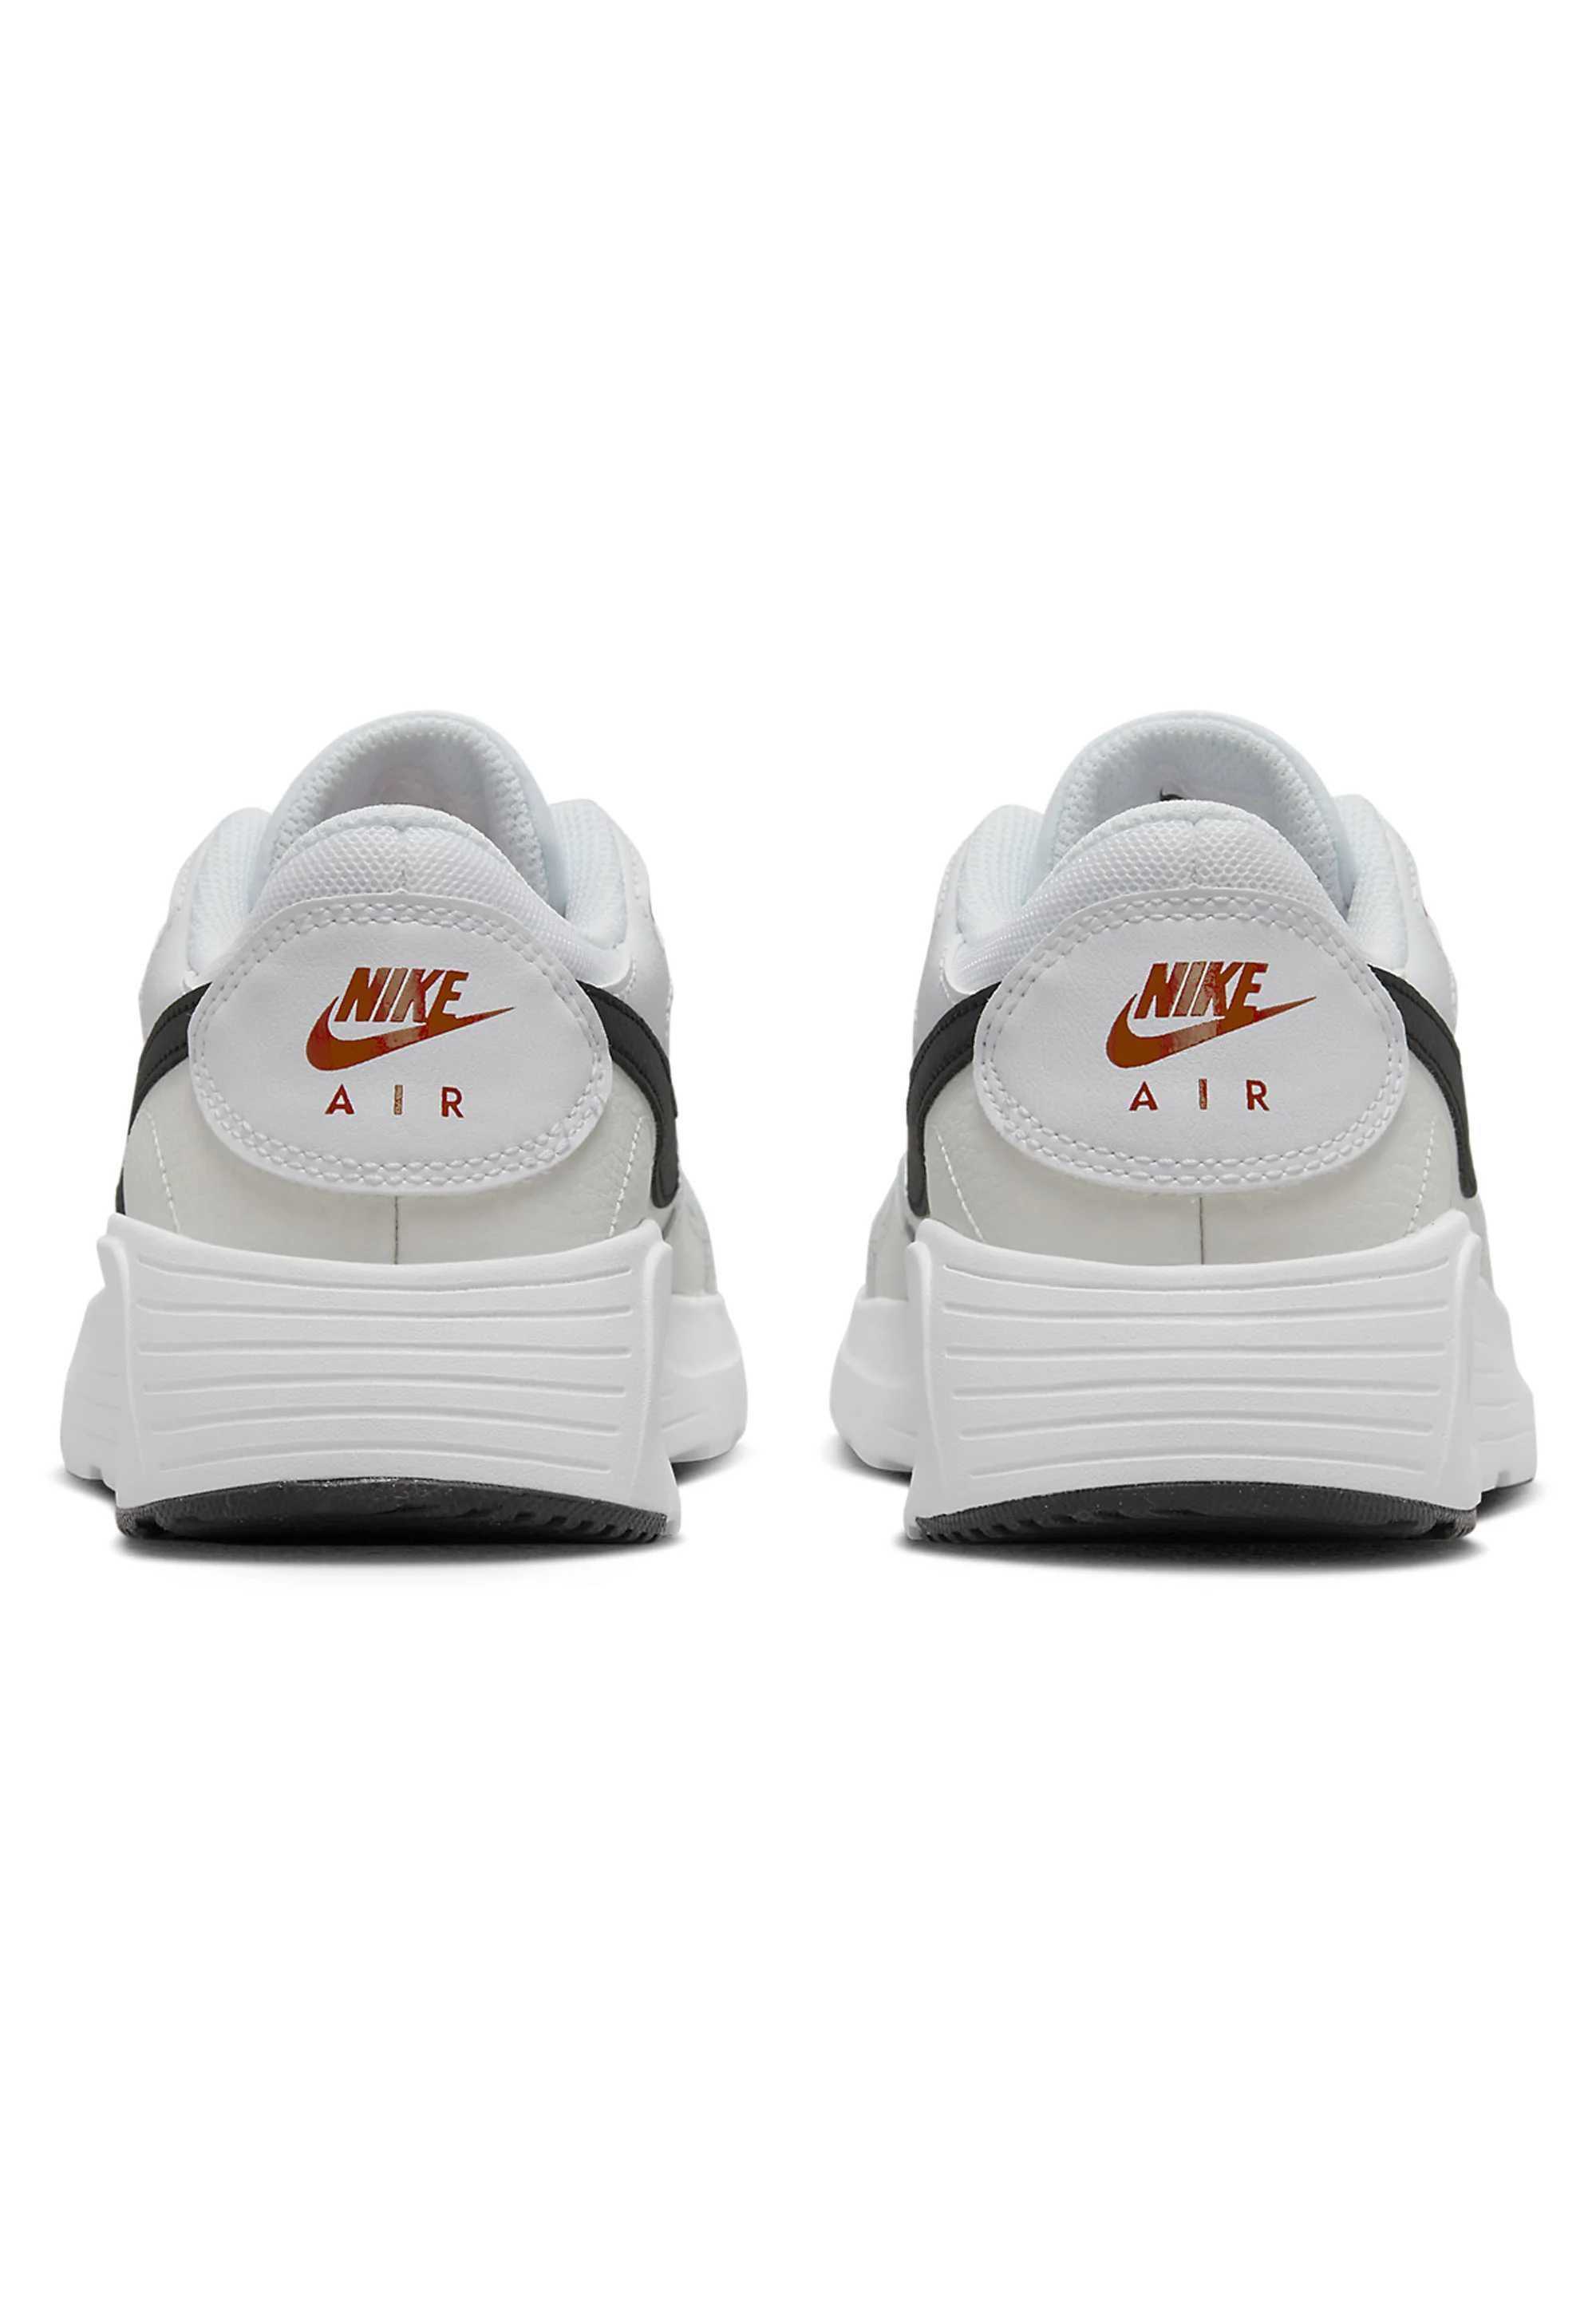 Oryginalne modne buty Nike Air Max Airmax białe cena sklepowa 499zł !